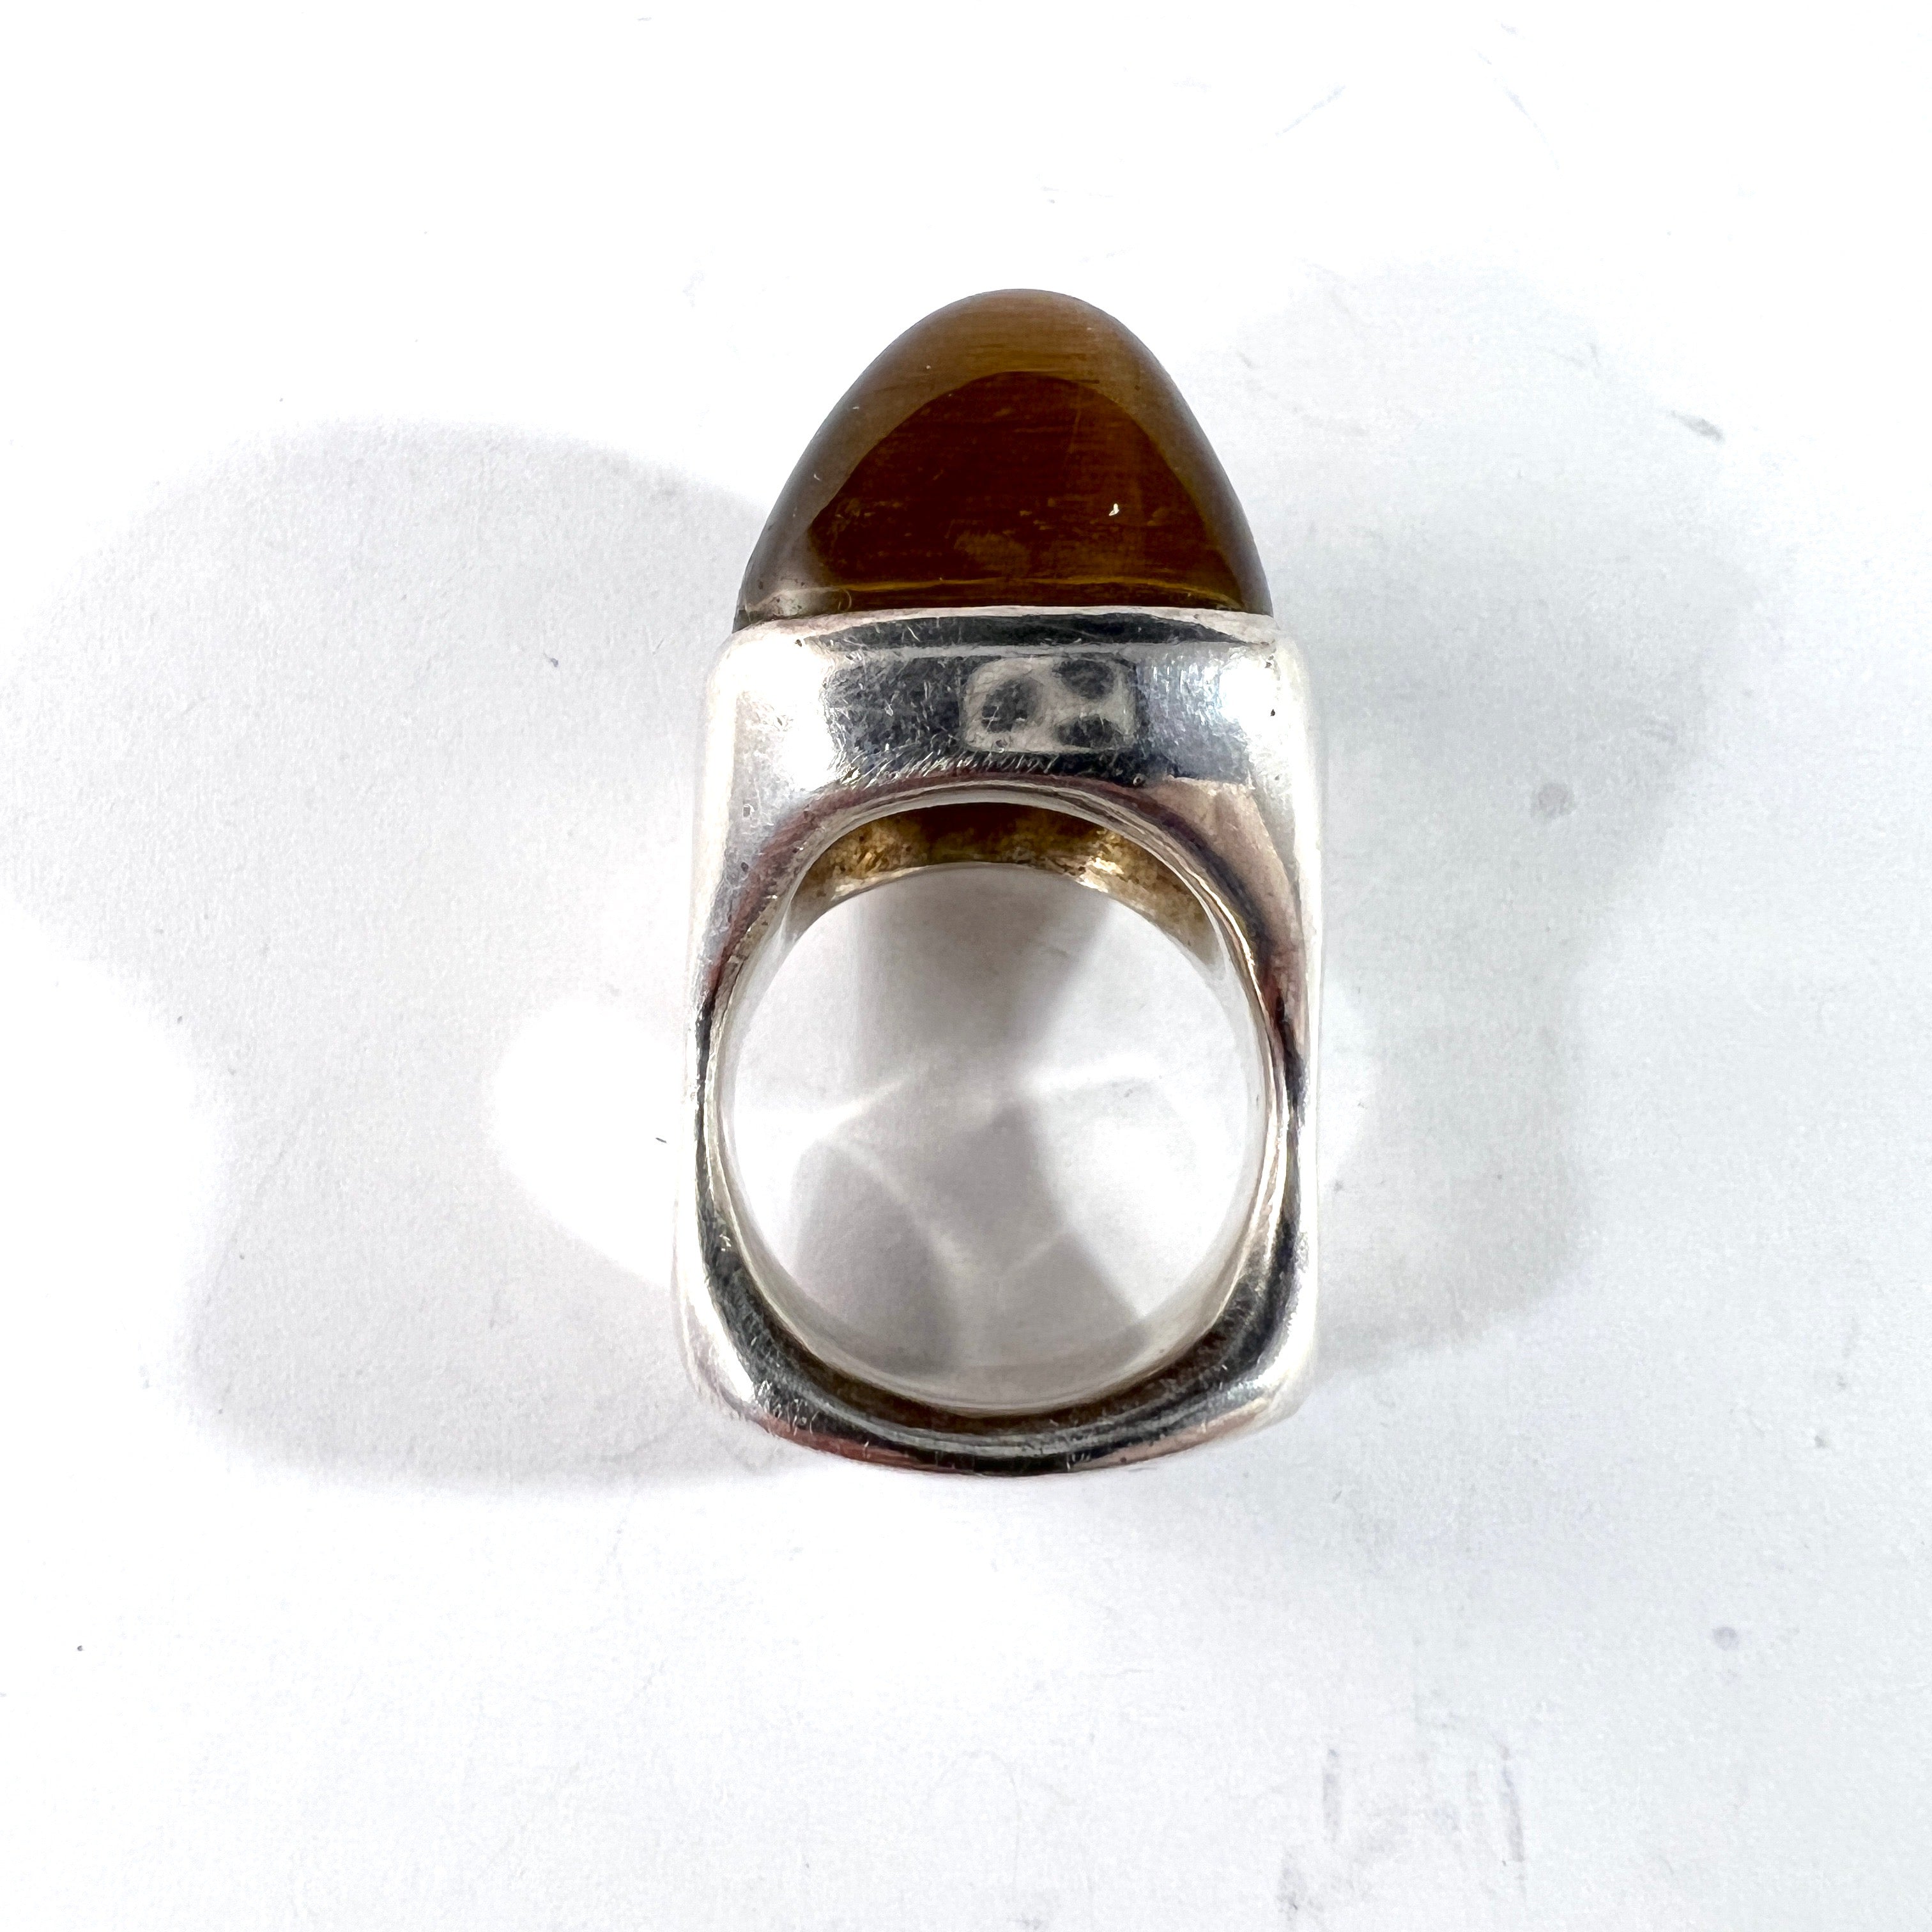 France 1960-70s. Bold Vintage Modernist Solid Silver Tiger's Eye Ring.